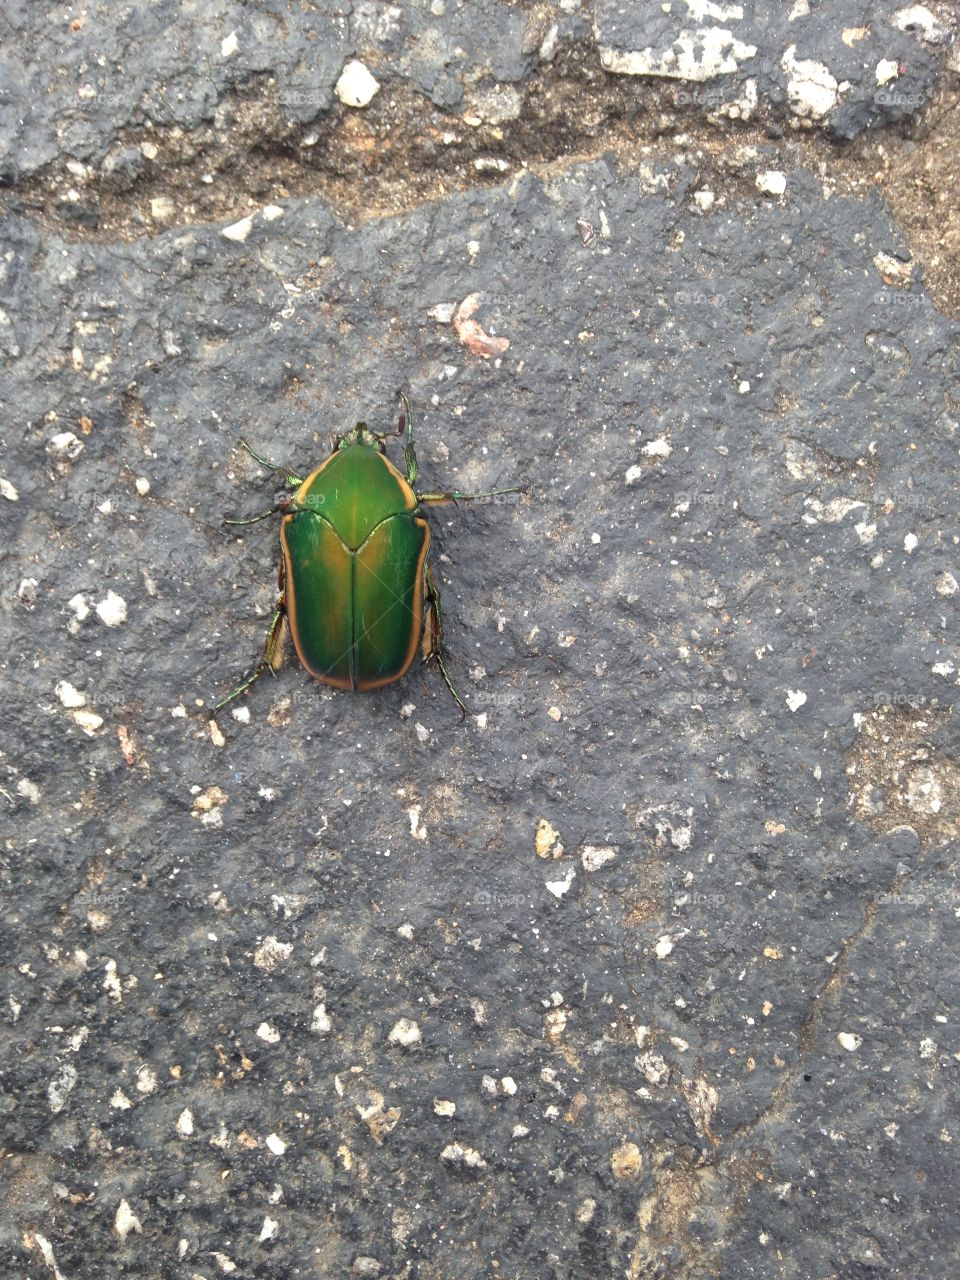 Beetle
